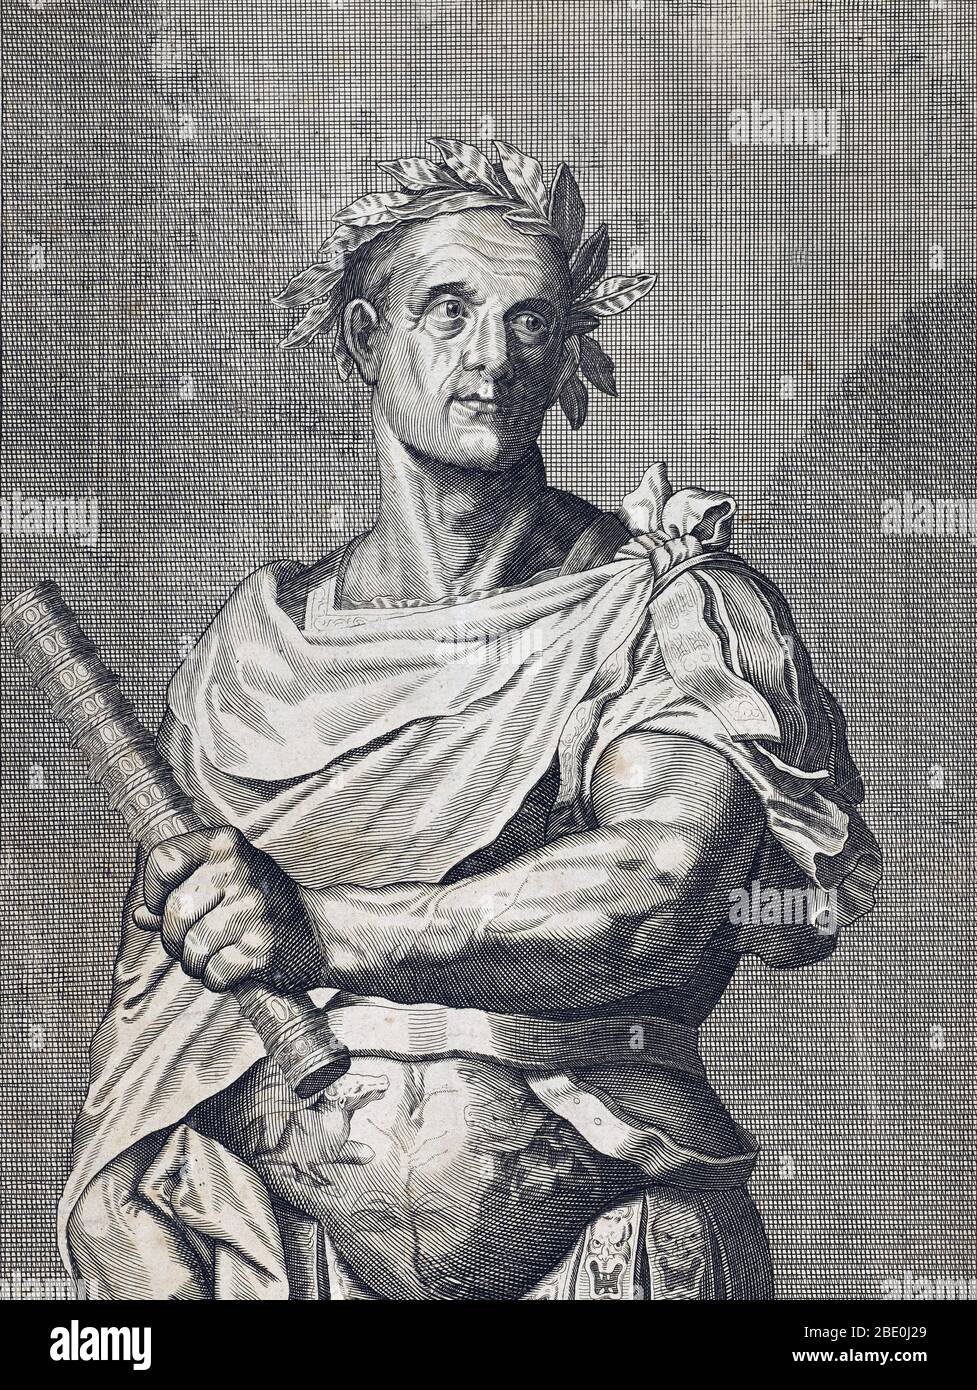 Gaius Julius César (100-44 av. J.-C.) était un général romain et un homme d'État. Il a joué un rôle essentiel dans la transformation progressive de la République romaine en Empire romain. Dans les campagnes militaires pour assurer le règne romain sur la province de Gaule (aujourd'hui France), il a gagné beaucoup de prestige. le sénat romain, craignant son pouvoir, lui a ordonné de dissoudre son armée, mais César a refusé, traversé la rivière Rubicon, est retourné à Rome avec son armée, et s'est fait dictateur. Lors d'une campagne ultérieure en Asie, il a fait rapport au sénat : « Je suis venu, j'ai vu, j'ai conquis ». César a été assassiné par son ami Brutus et o Banque D'Images